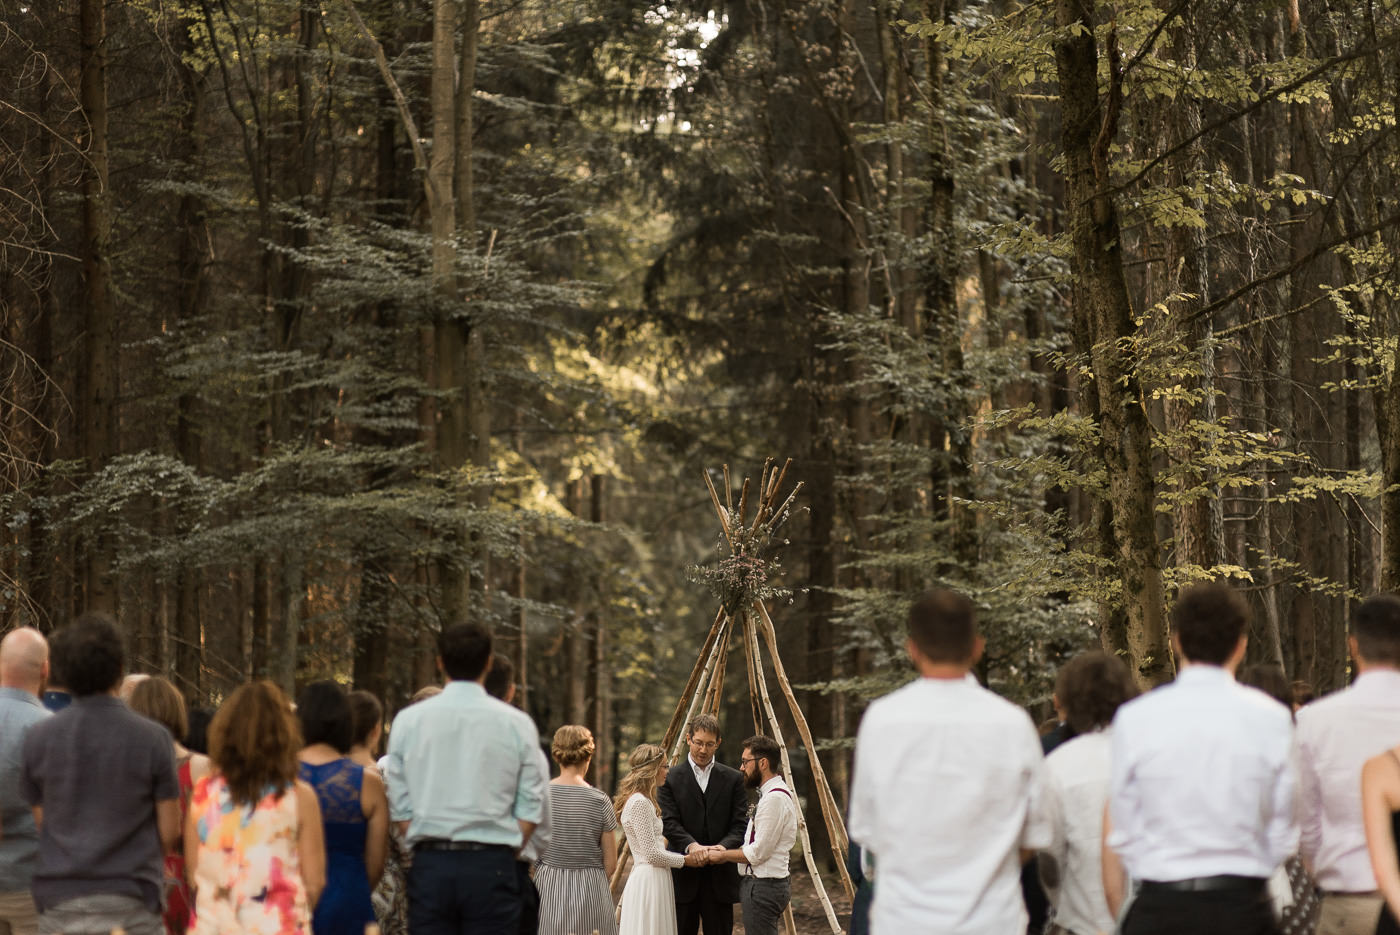 Trauung mit Eheversprechen und Trauredner in Wald unter Tipi zu Hochzeit im Grünen mit Hochzeitsgesellschaft auf Klappstühlen